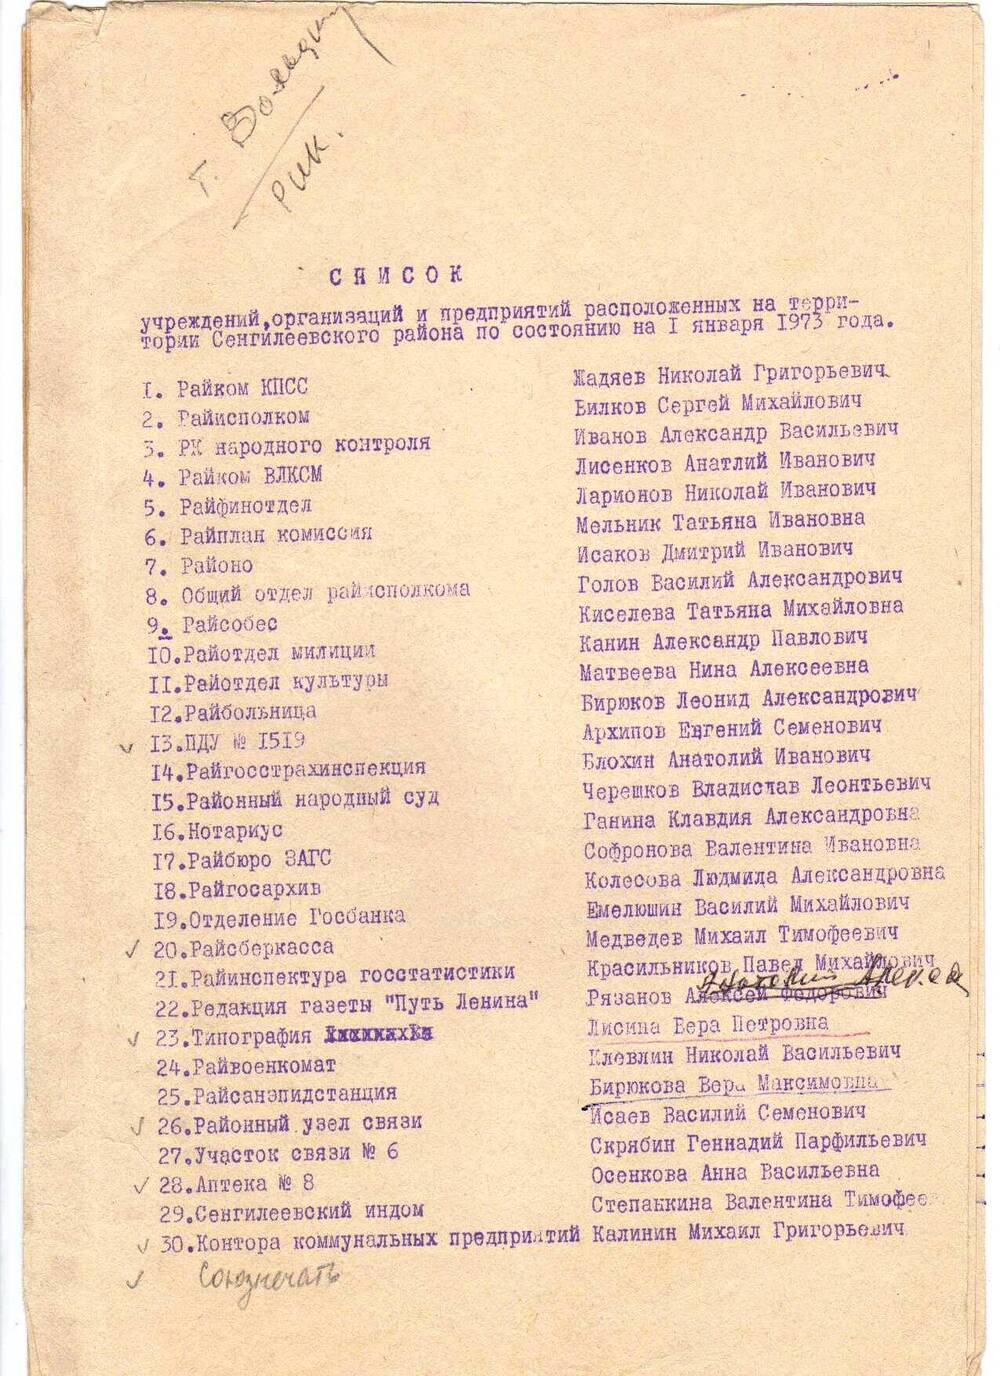 Список учреждений, организаций и предприятий расположенных на территории Сенгилеевского района на 1.01.1973 г